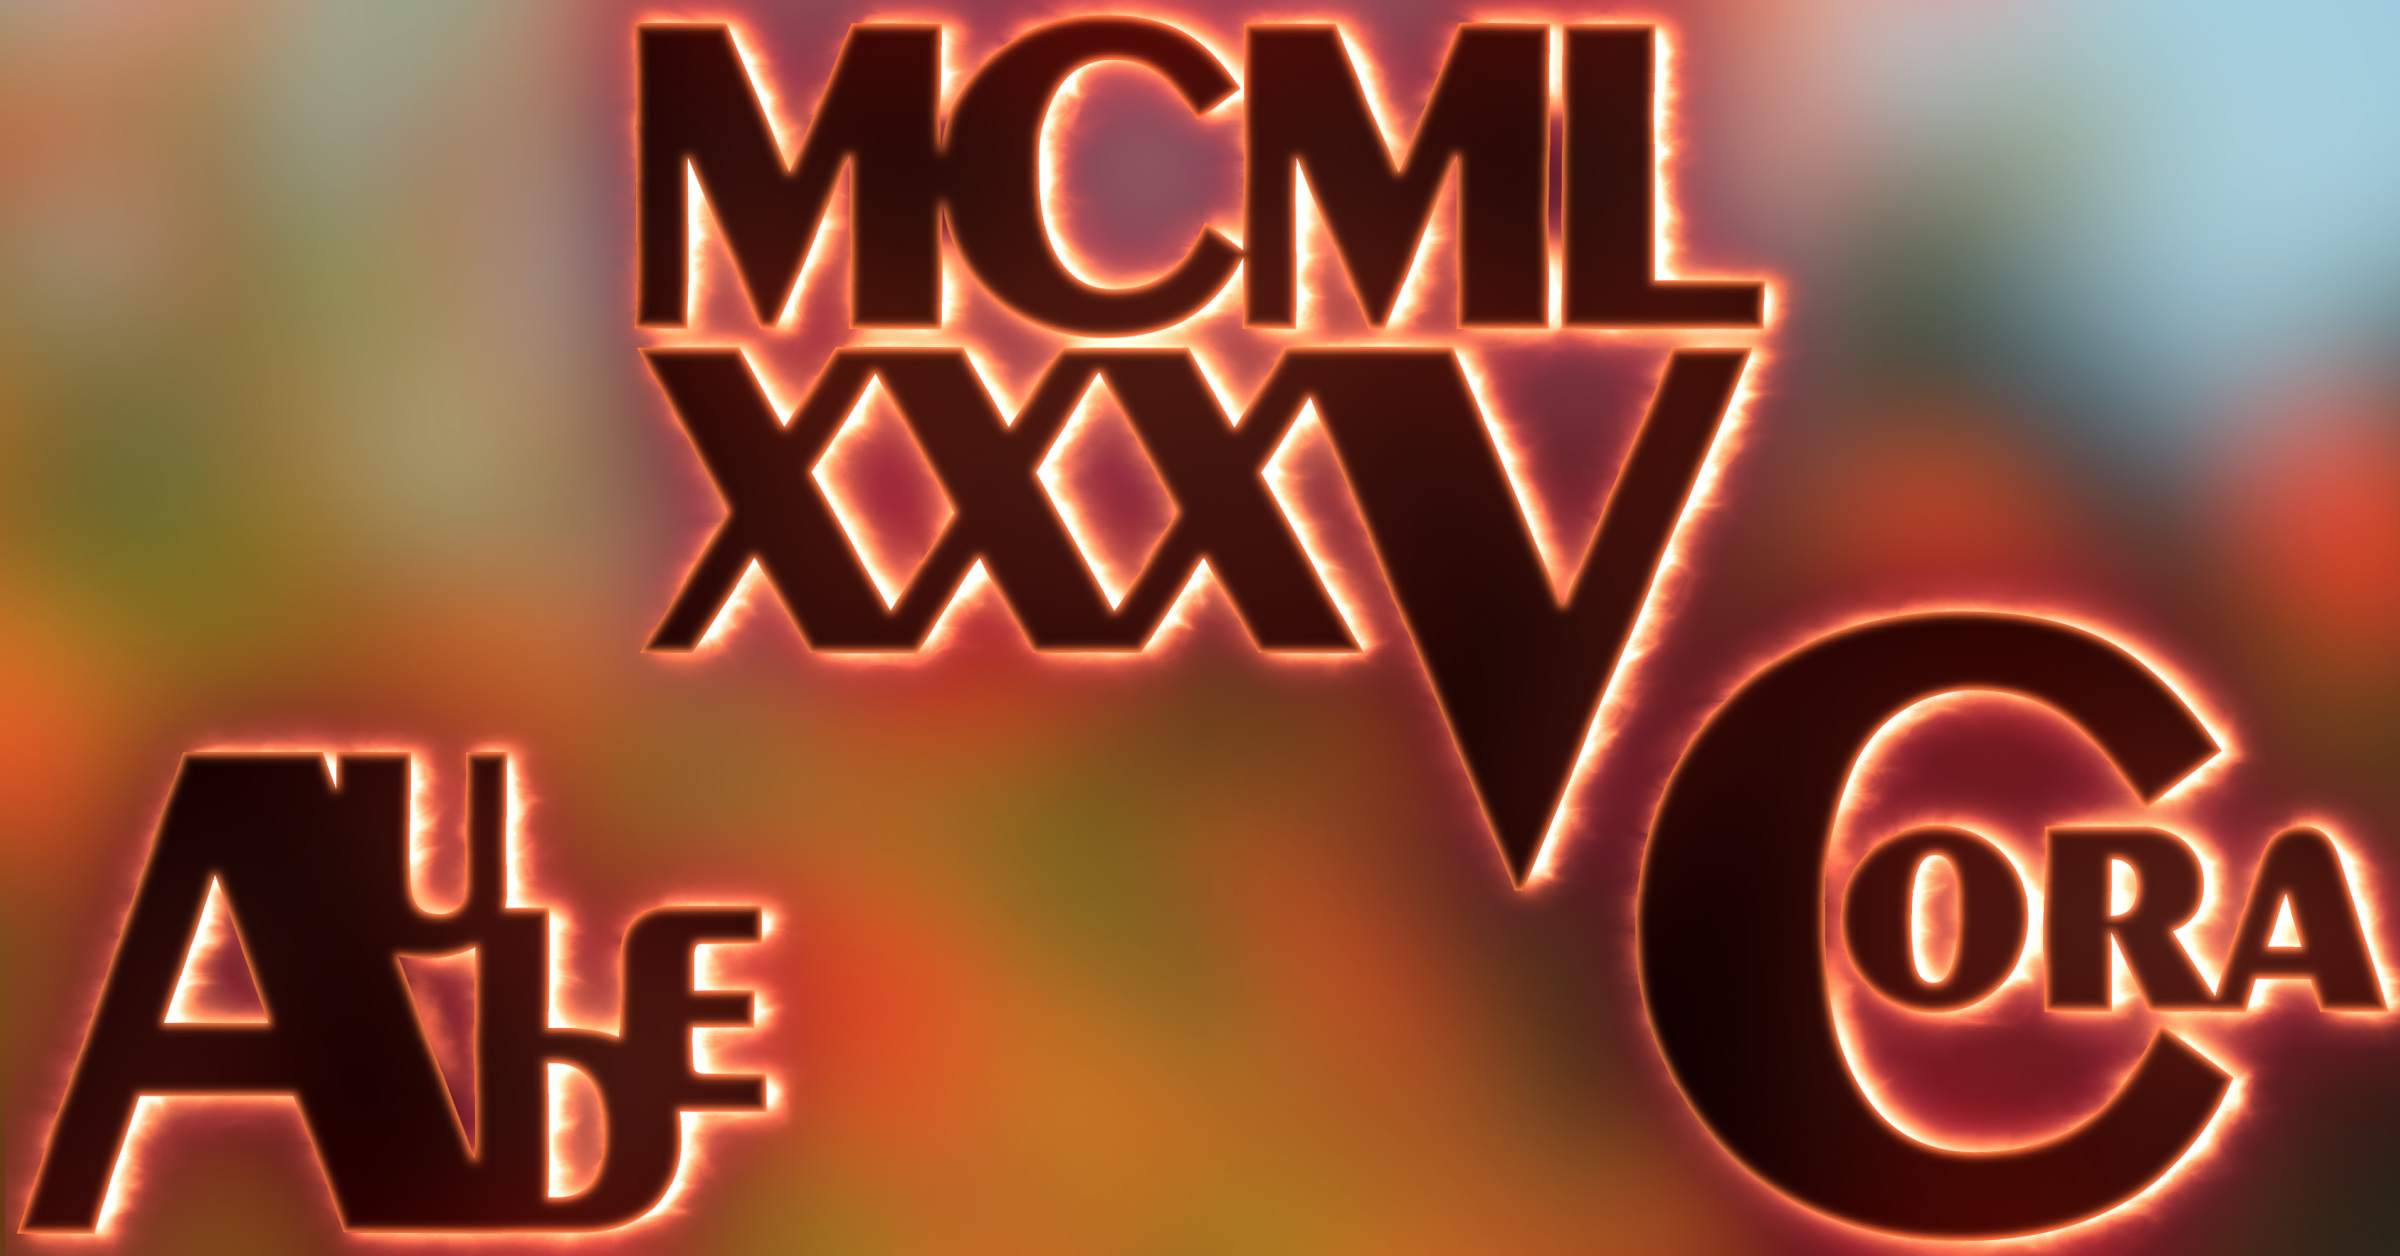 Motel x MCMLXXXV - フライヤー表